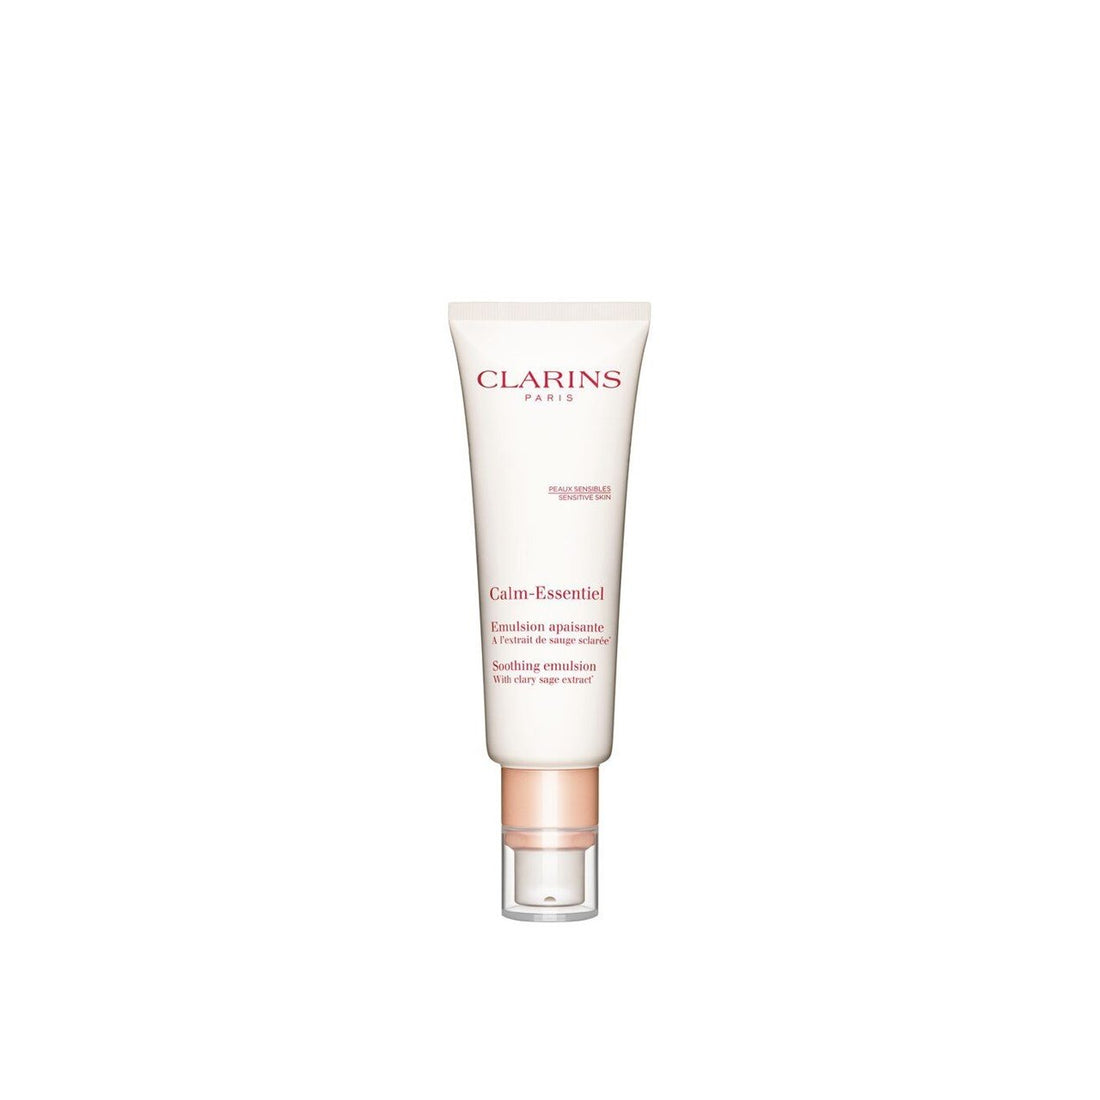 Clarins Calm-Essentiel Émulsion Apaisante 50 ml